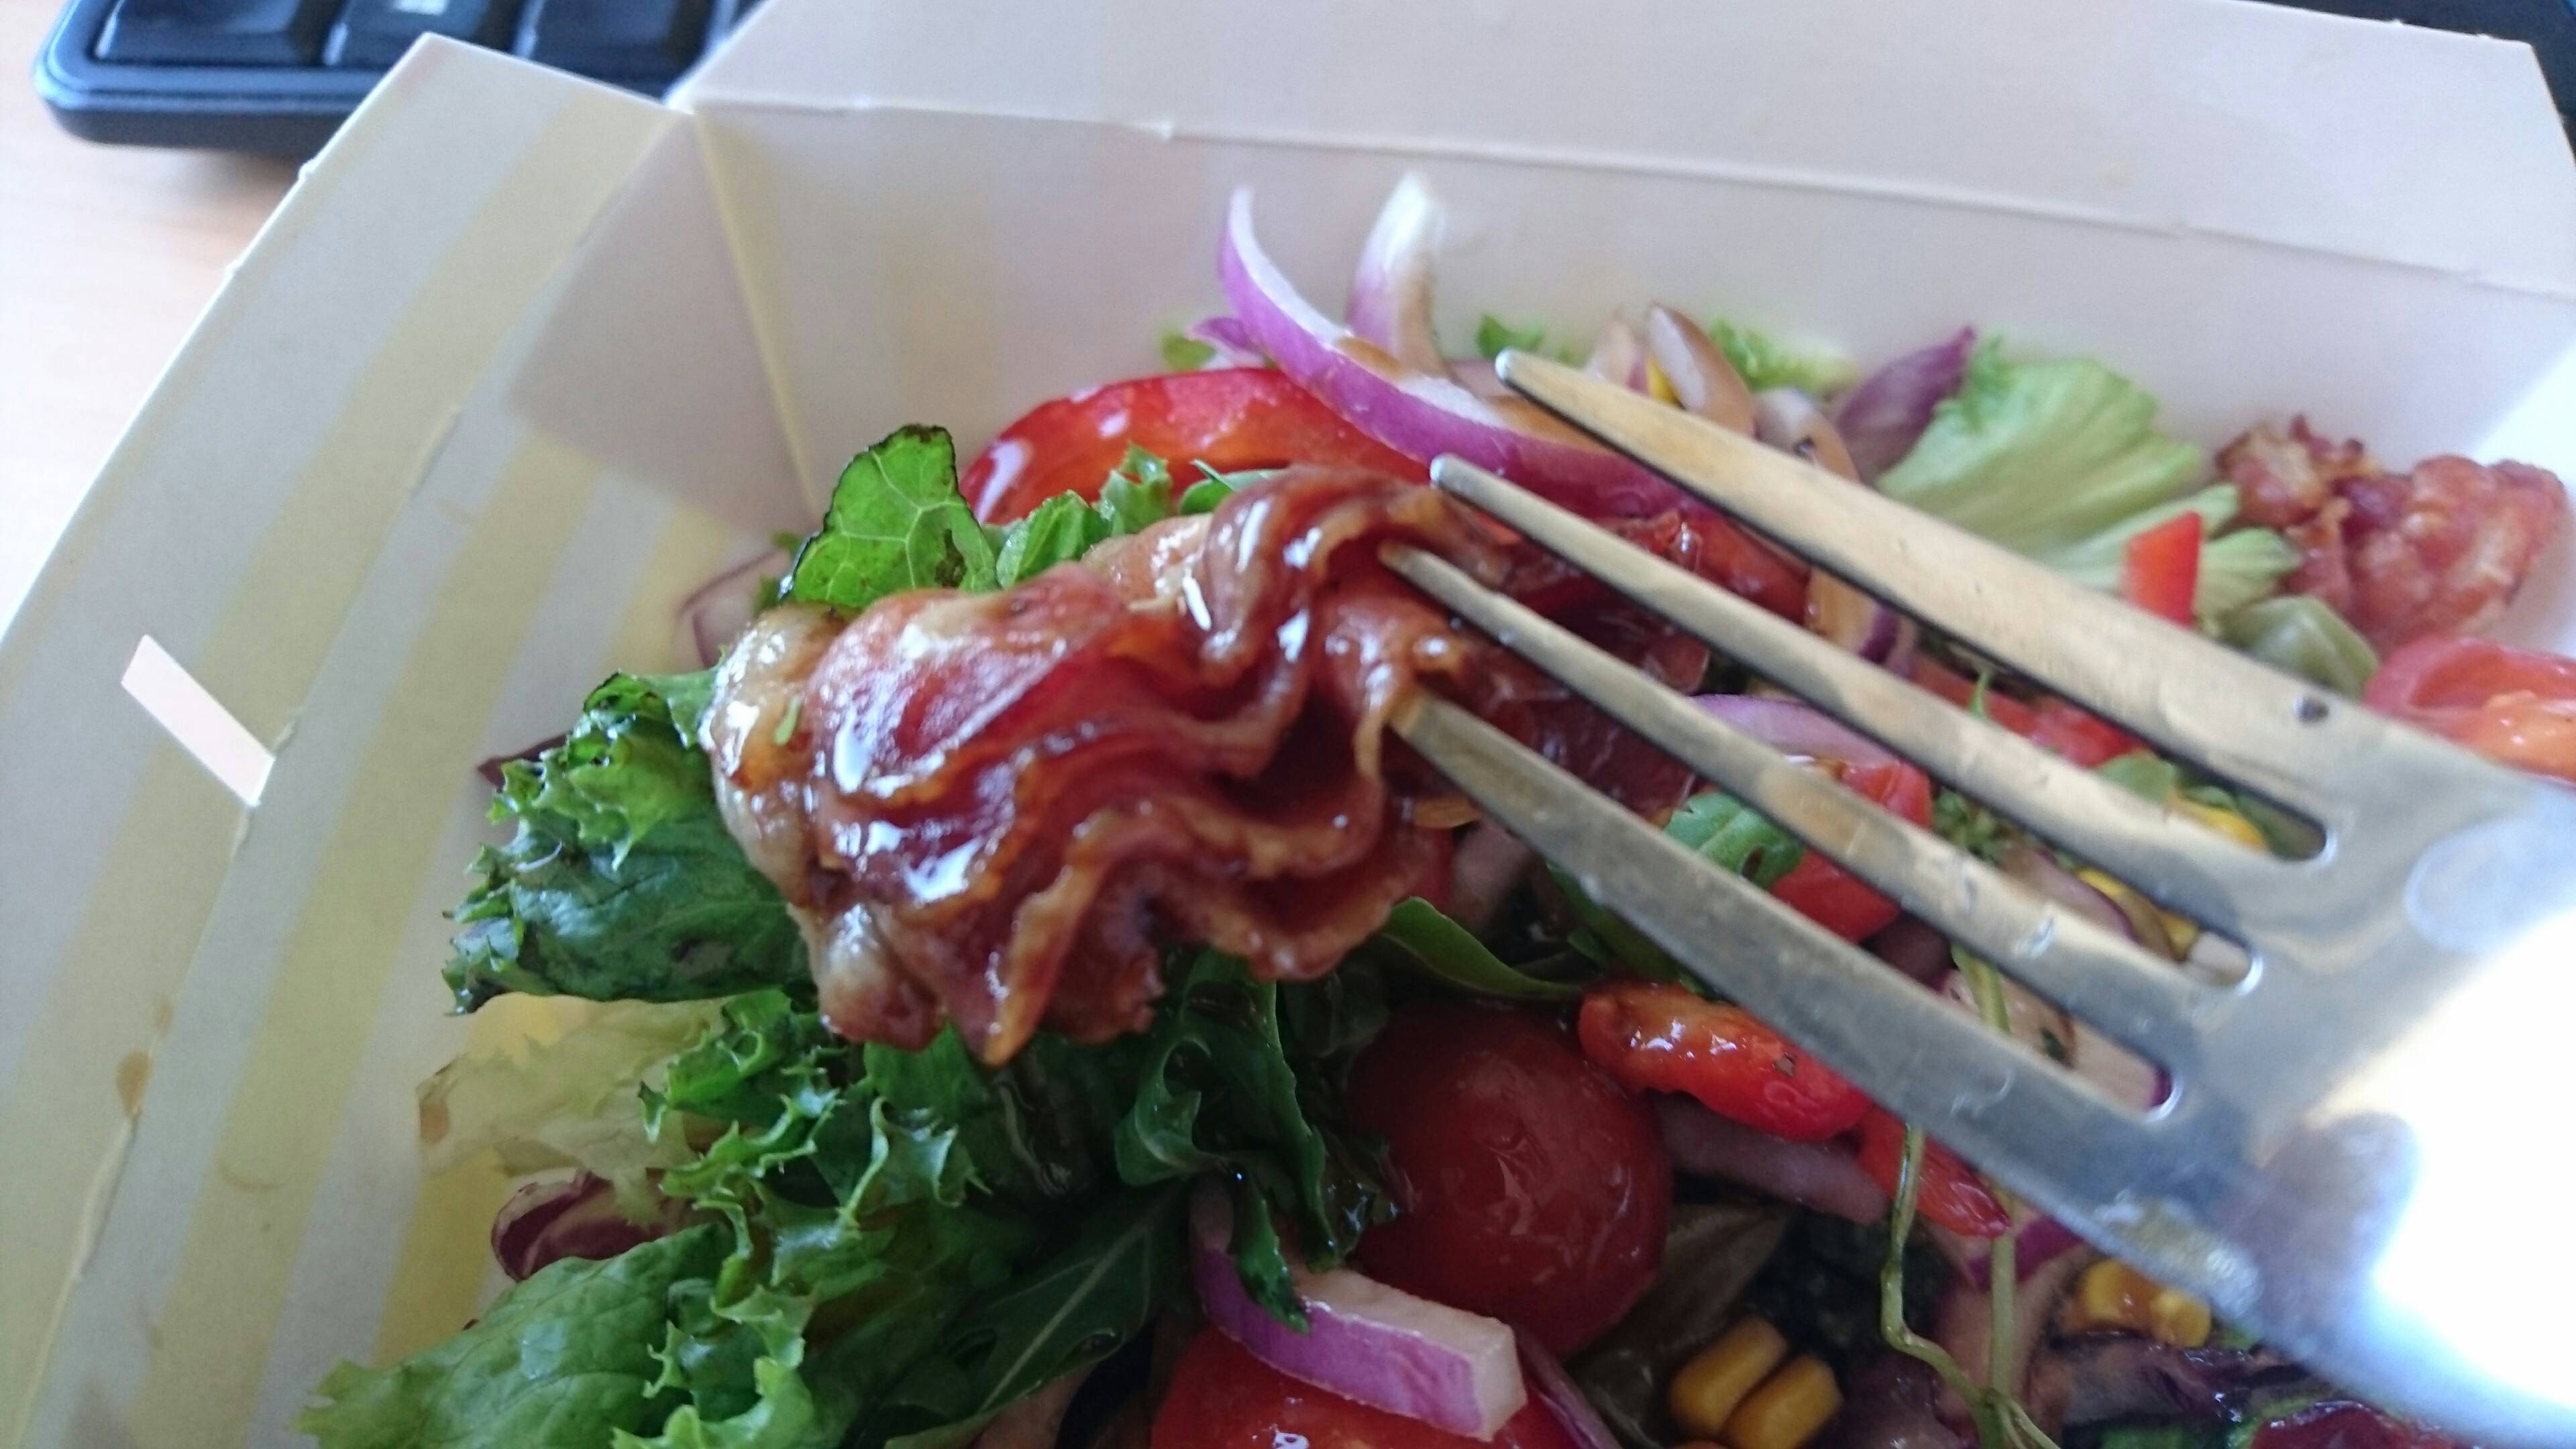 Auf der Homepage ist der Bacon locker im Salat verteilt. Hier gibt's ihn als Paket (unfrei verschickt)...